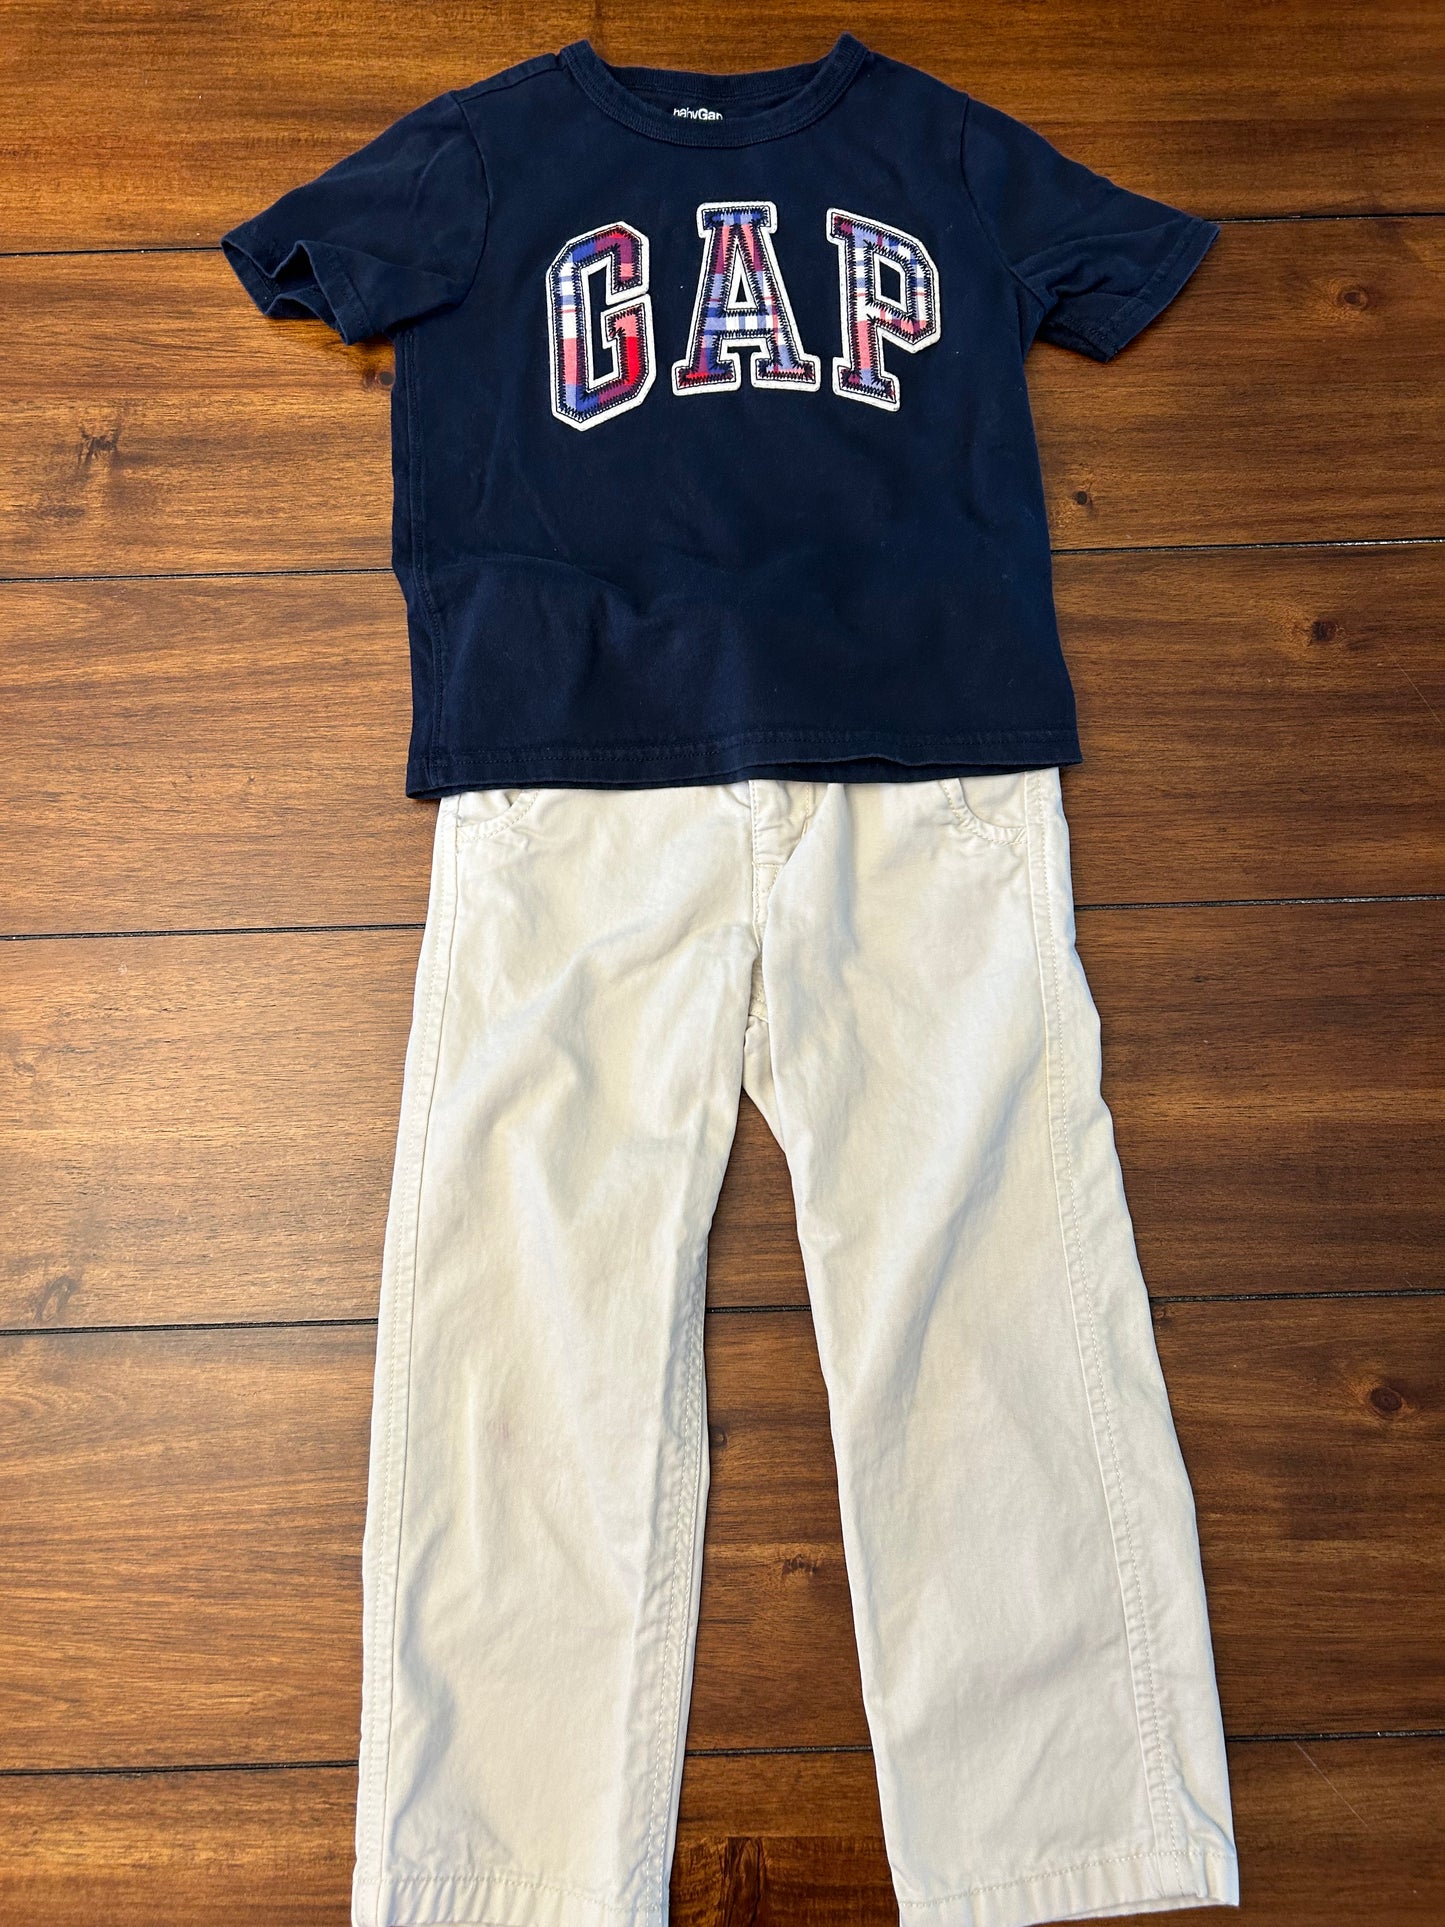 Gap	Boys Navy & Khaki GAP Arch Logo T-shirt & Khaki Pants Set Size 4 PPU 45040